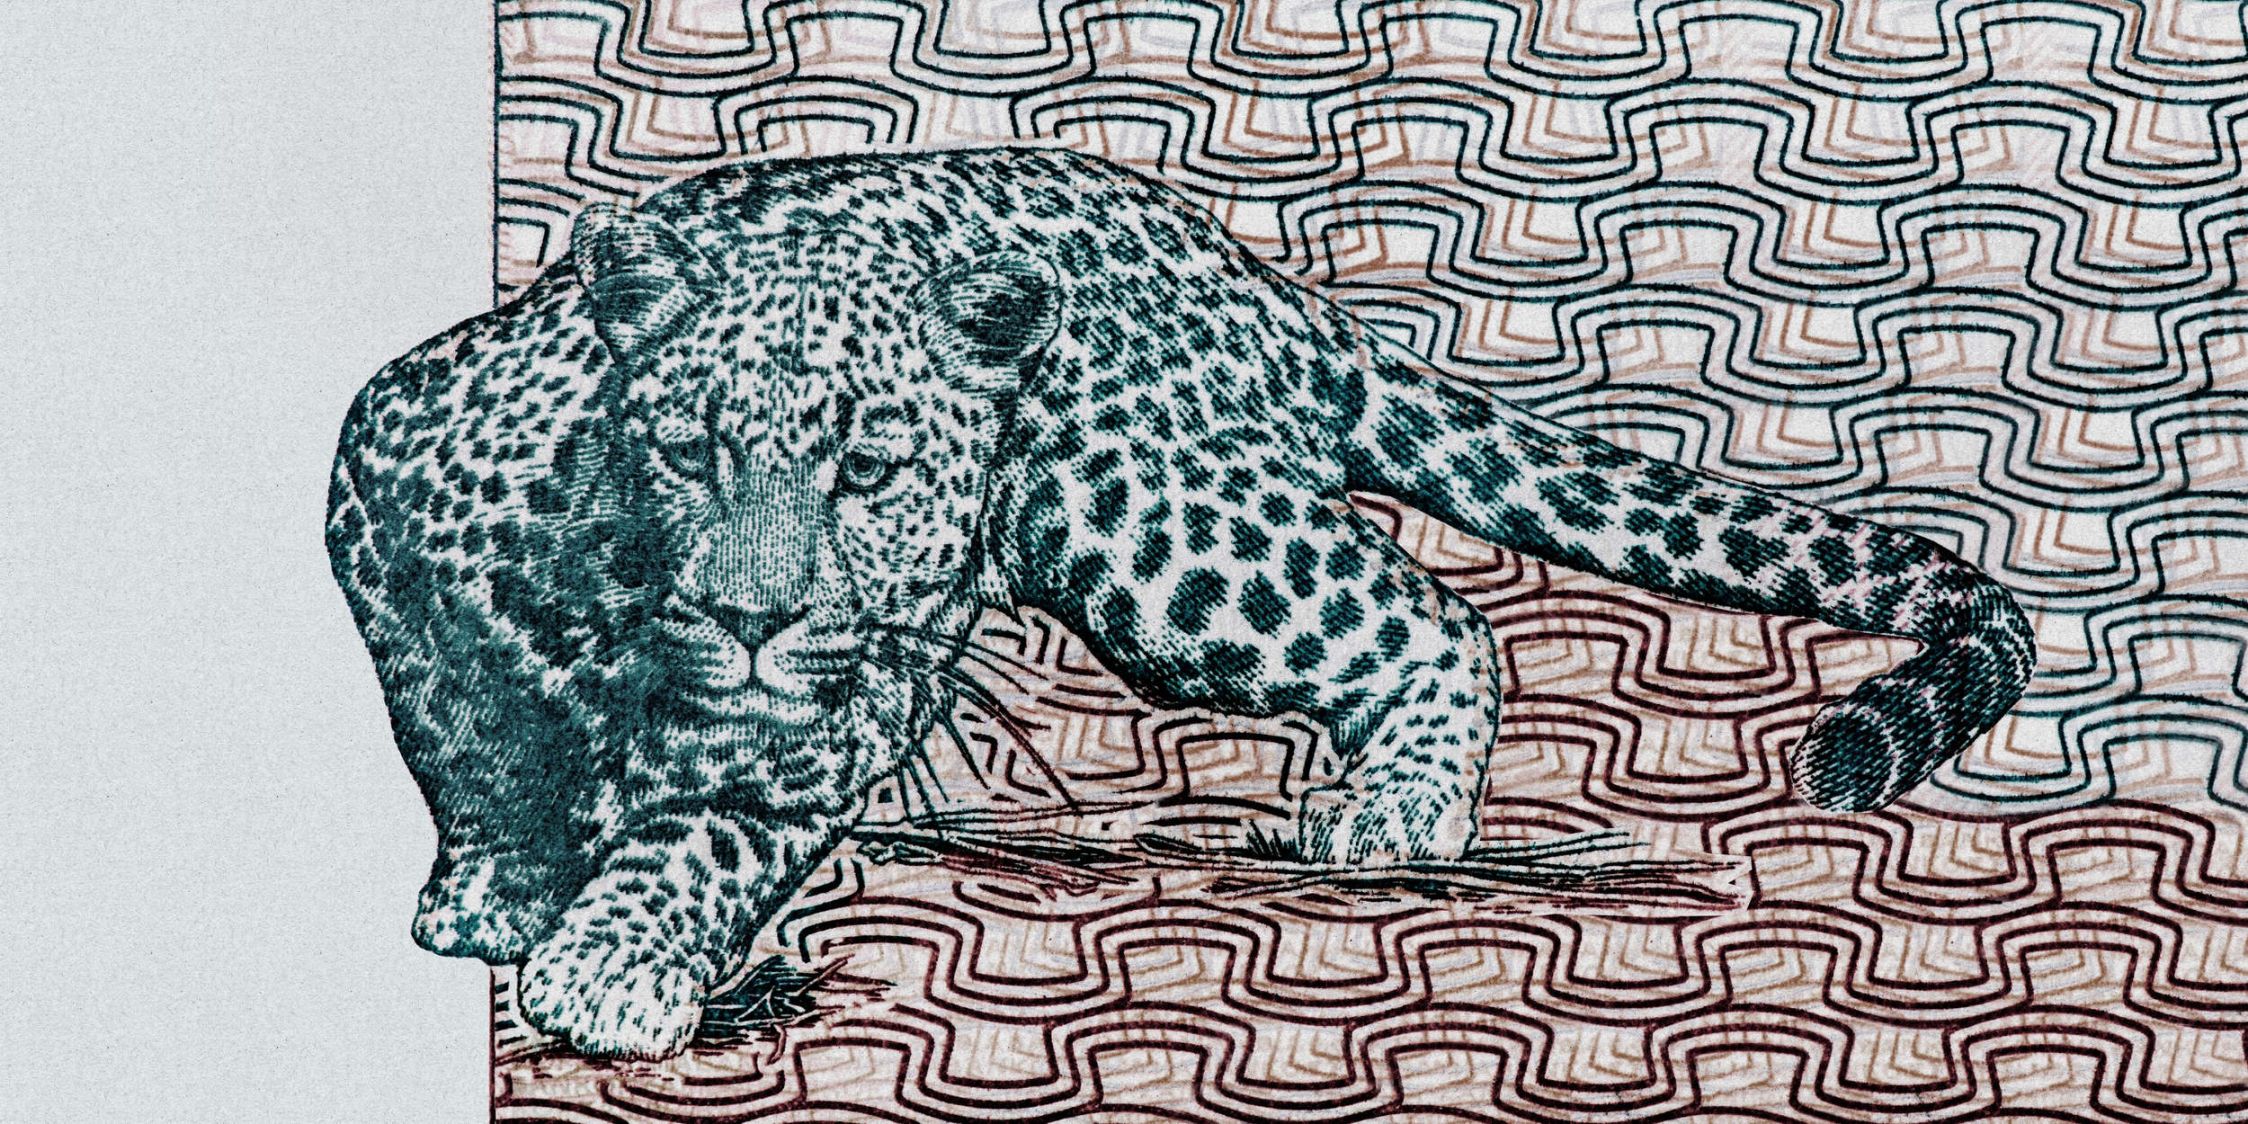             Fototapete »yugana« - Leopard vor abstraktem Muster – Kraftpapier-Struktur | Glattes, leicht glänzendes Premiumvlies
        